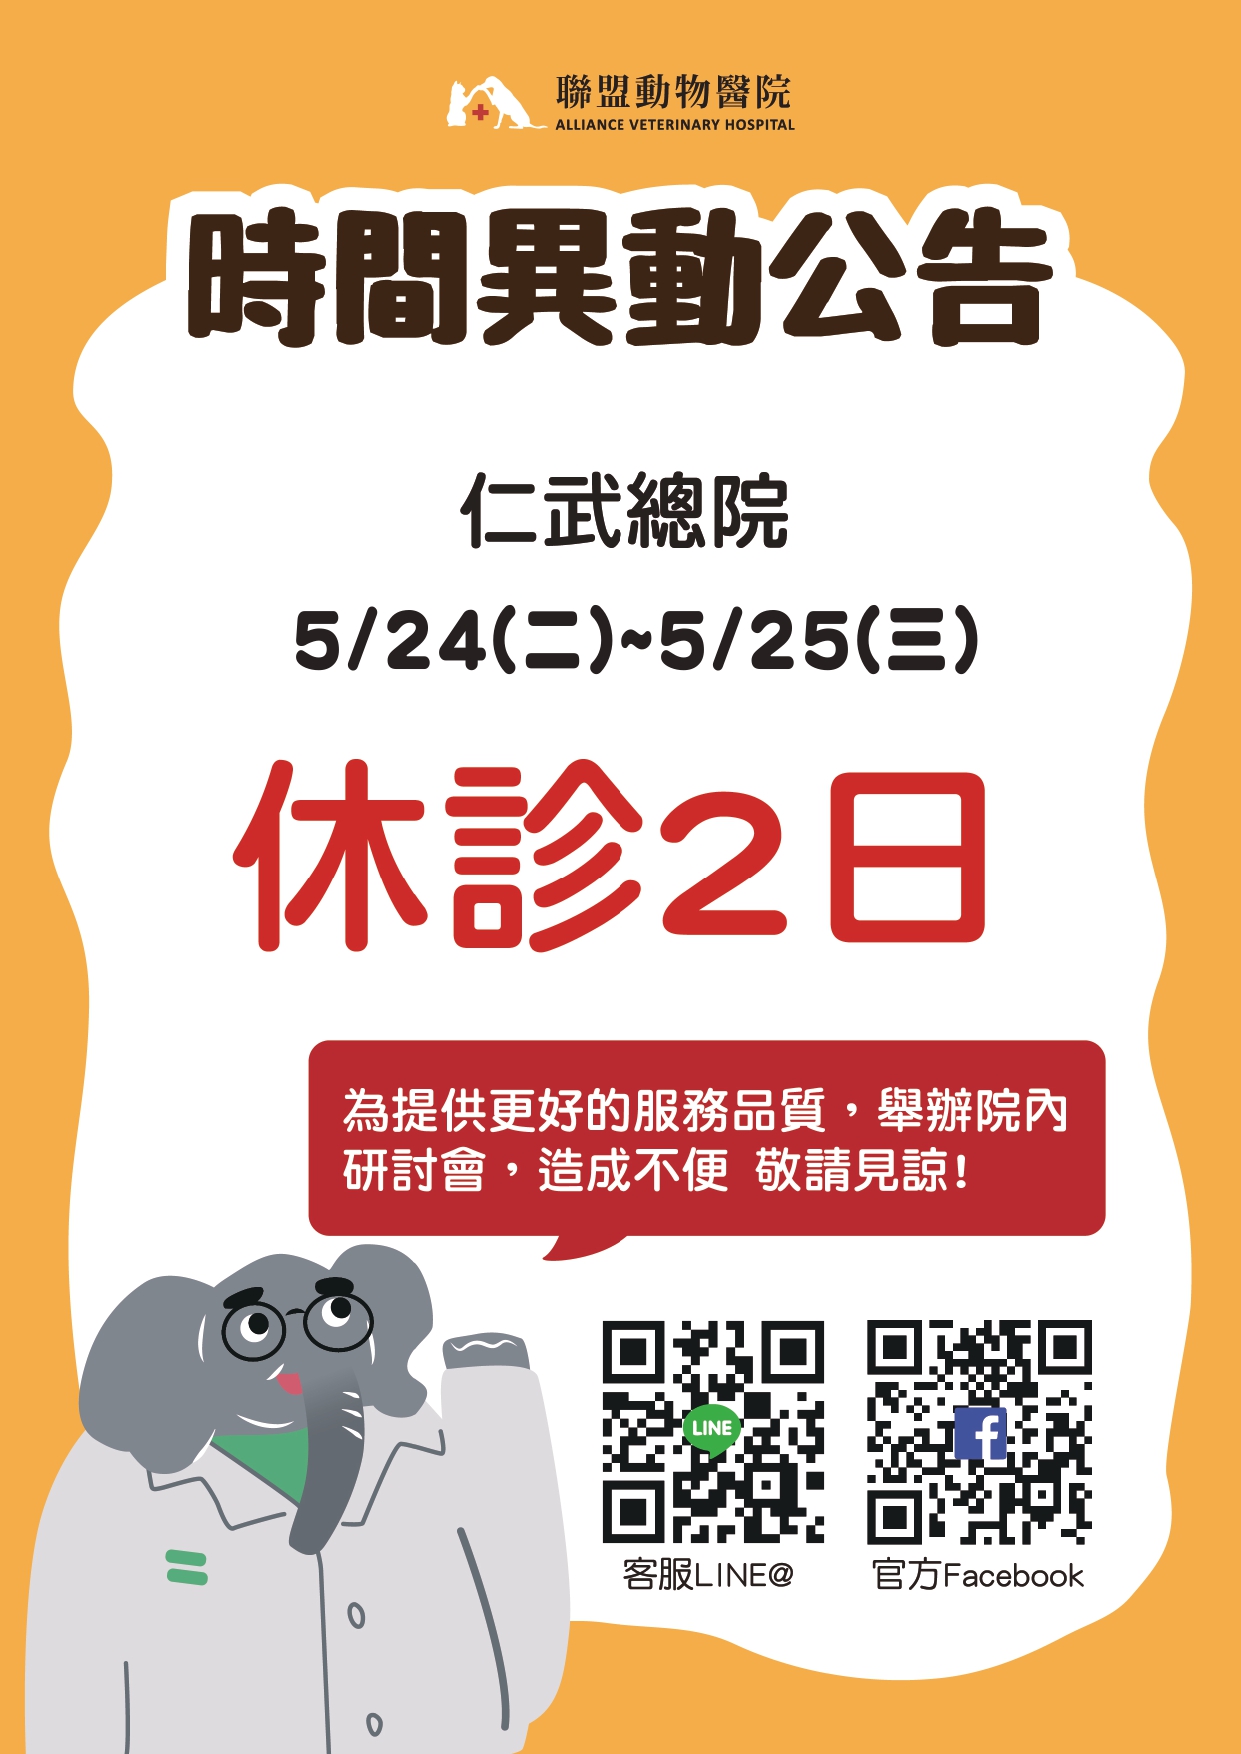 2022/5/24(二)-5/25(三)，仁武總院 營業時間異動公告